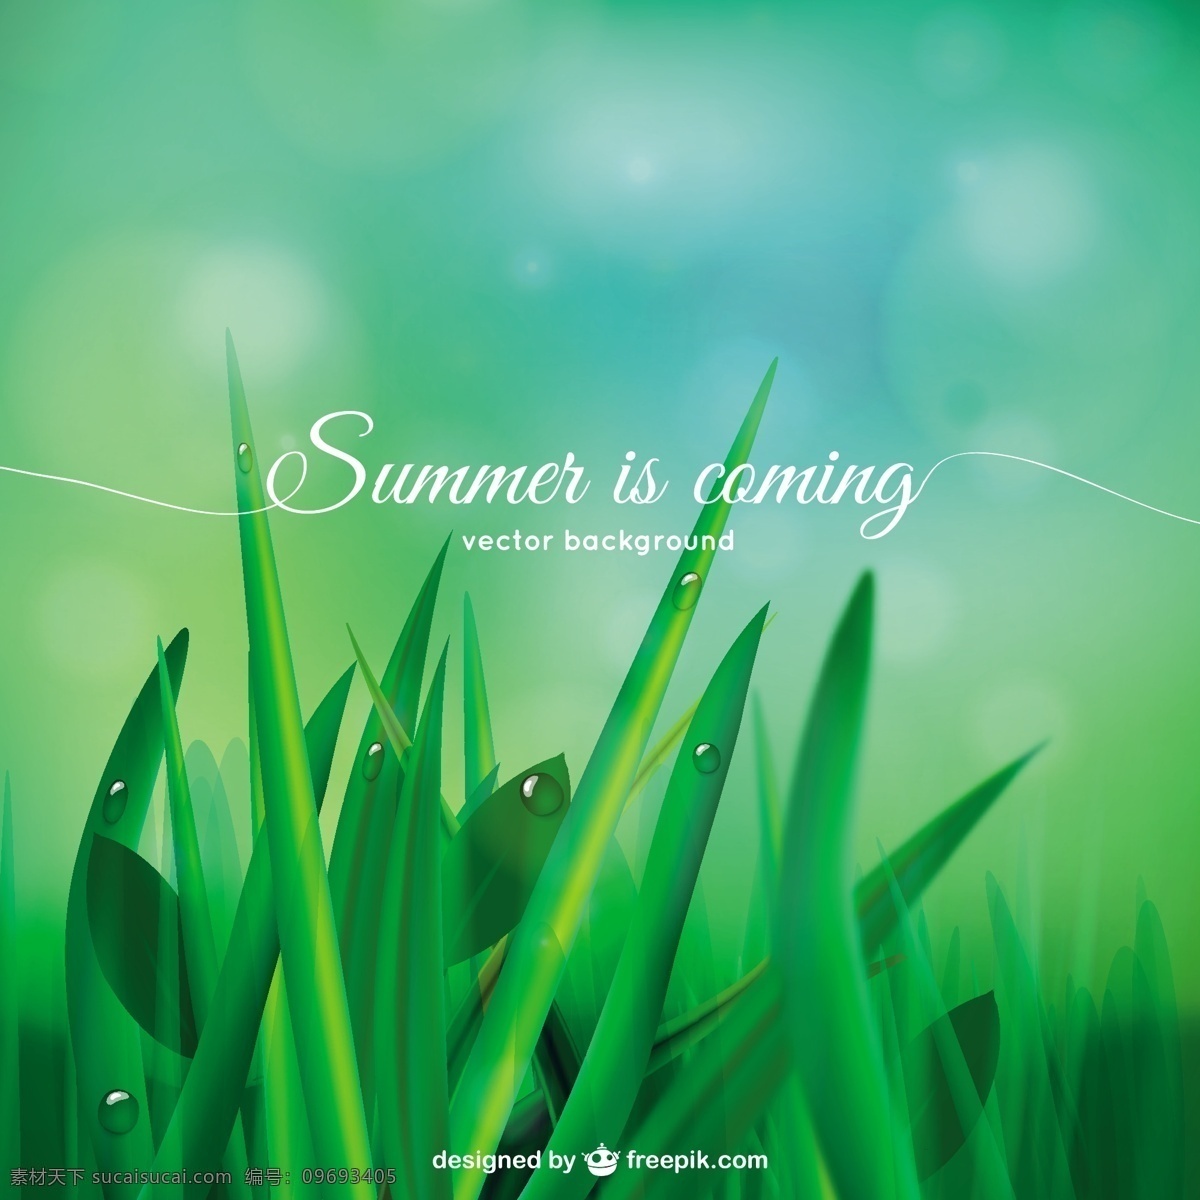 夏天即将到来 背景 夏天 自然 绿色 草 绿色背景 树叶 植物 自然背景 绿叶 草坪 即将到来